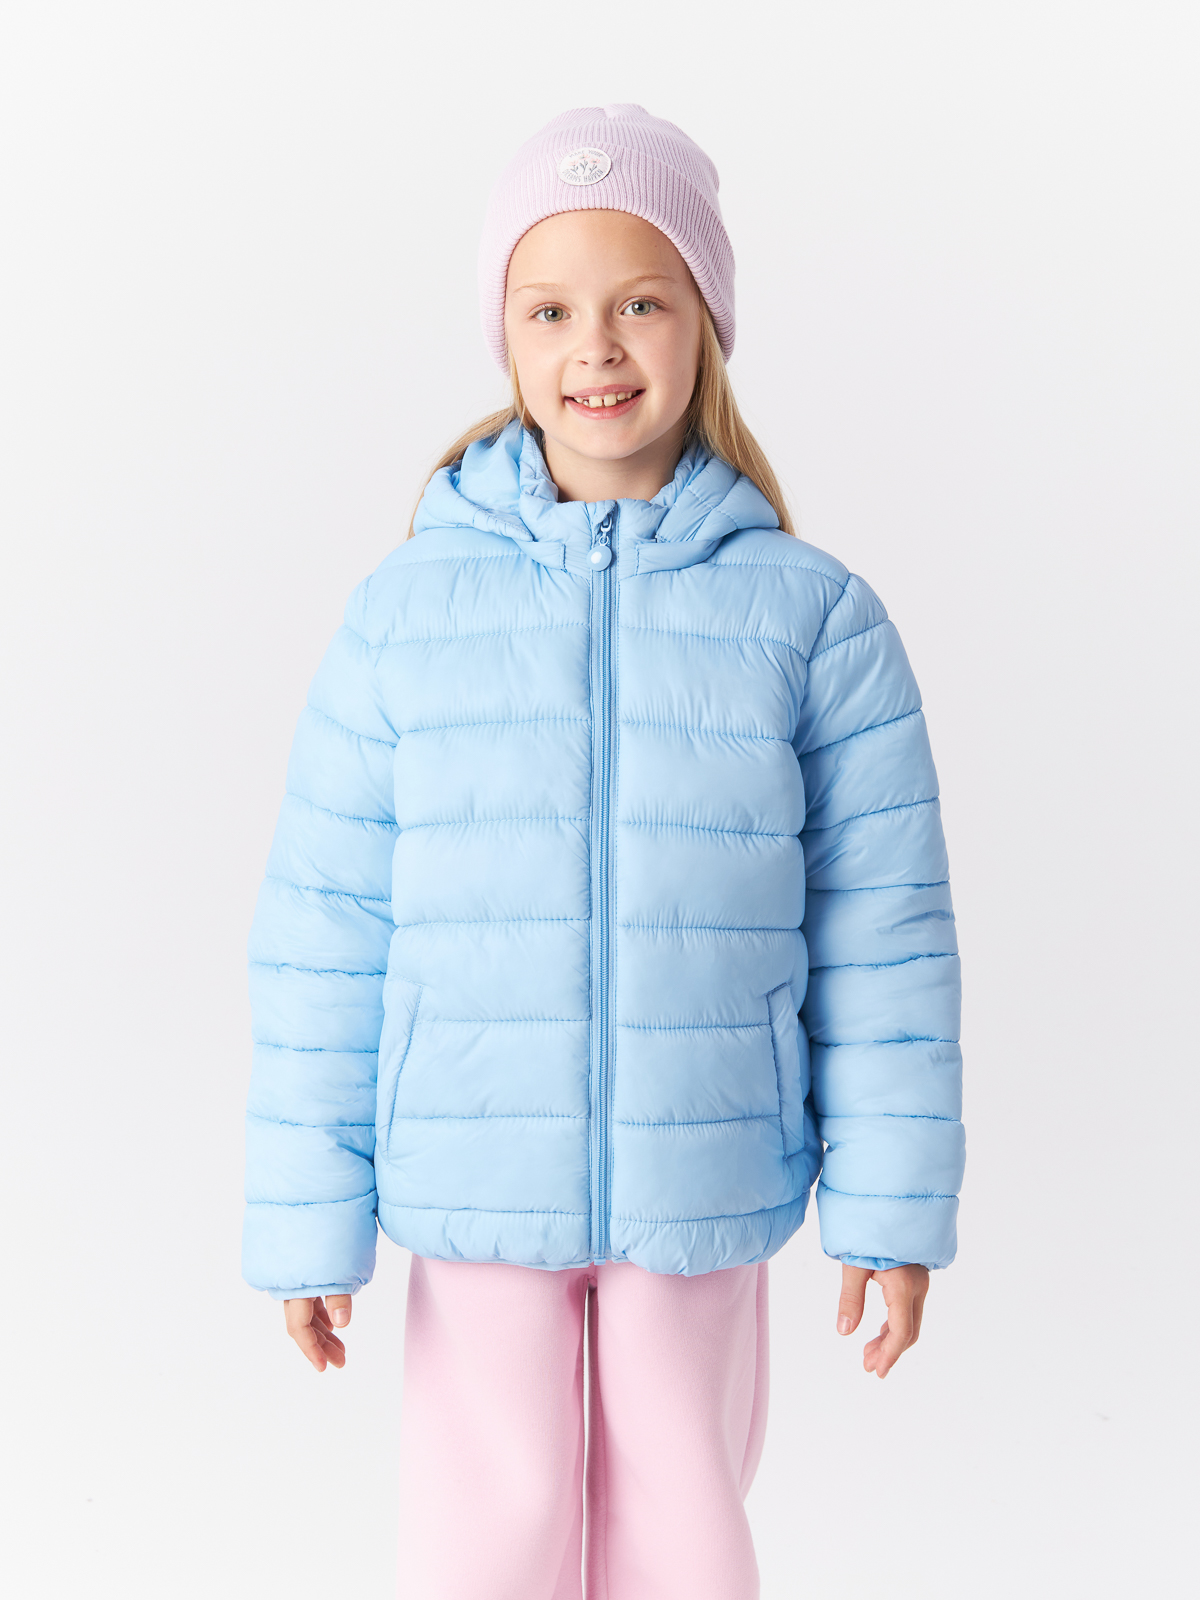 Куртка Mcstyles для девочки, размер 104, SMM14, голубая